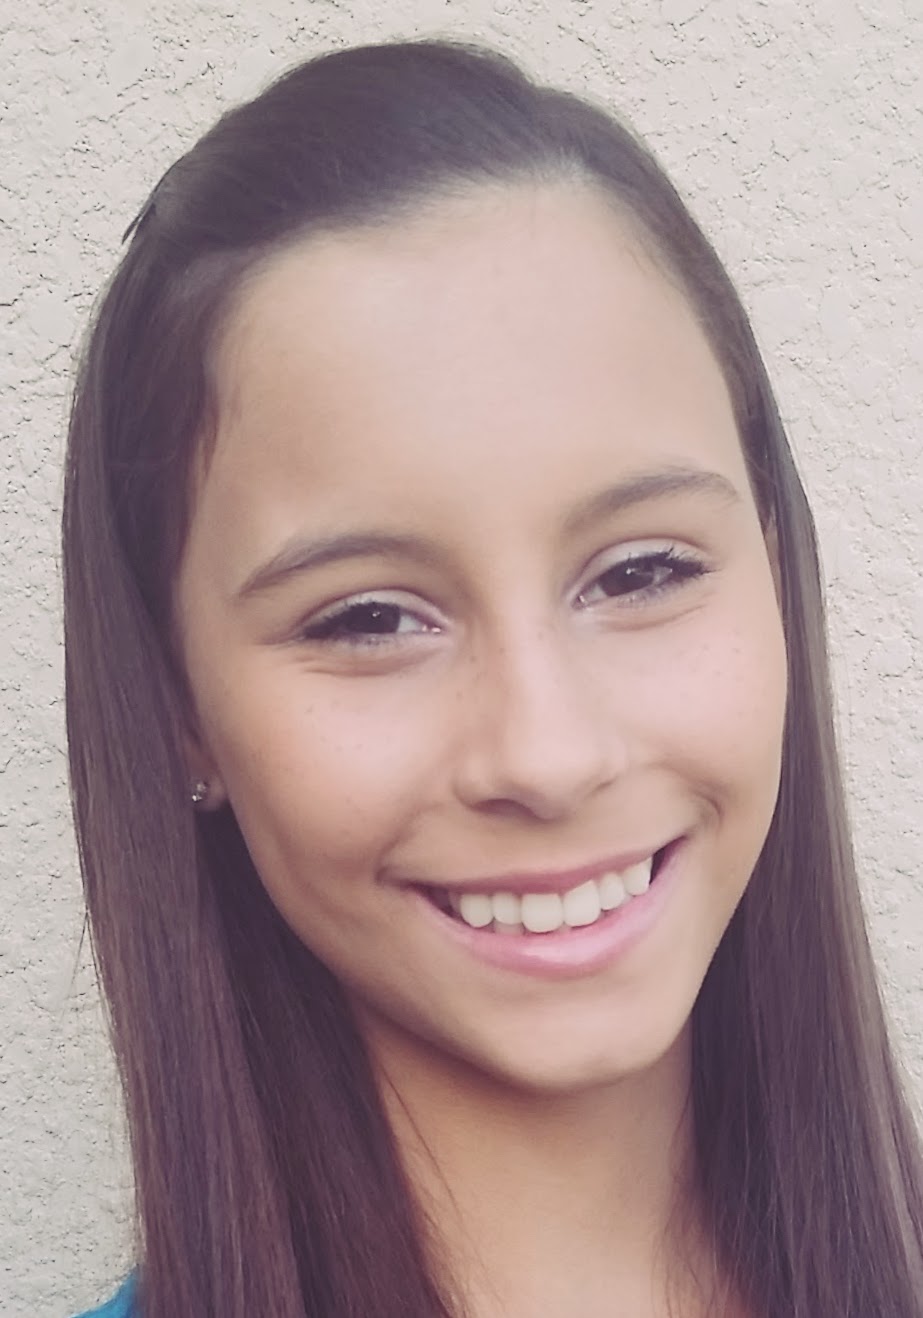 Abigail, age 15 (in 2015)